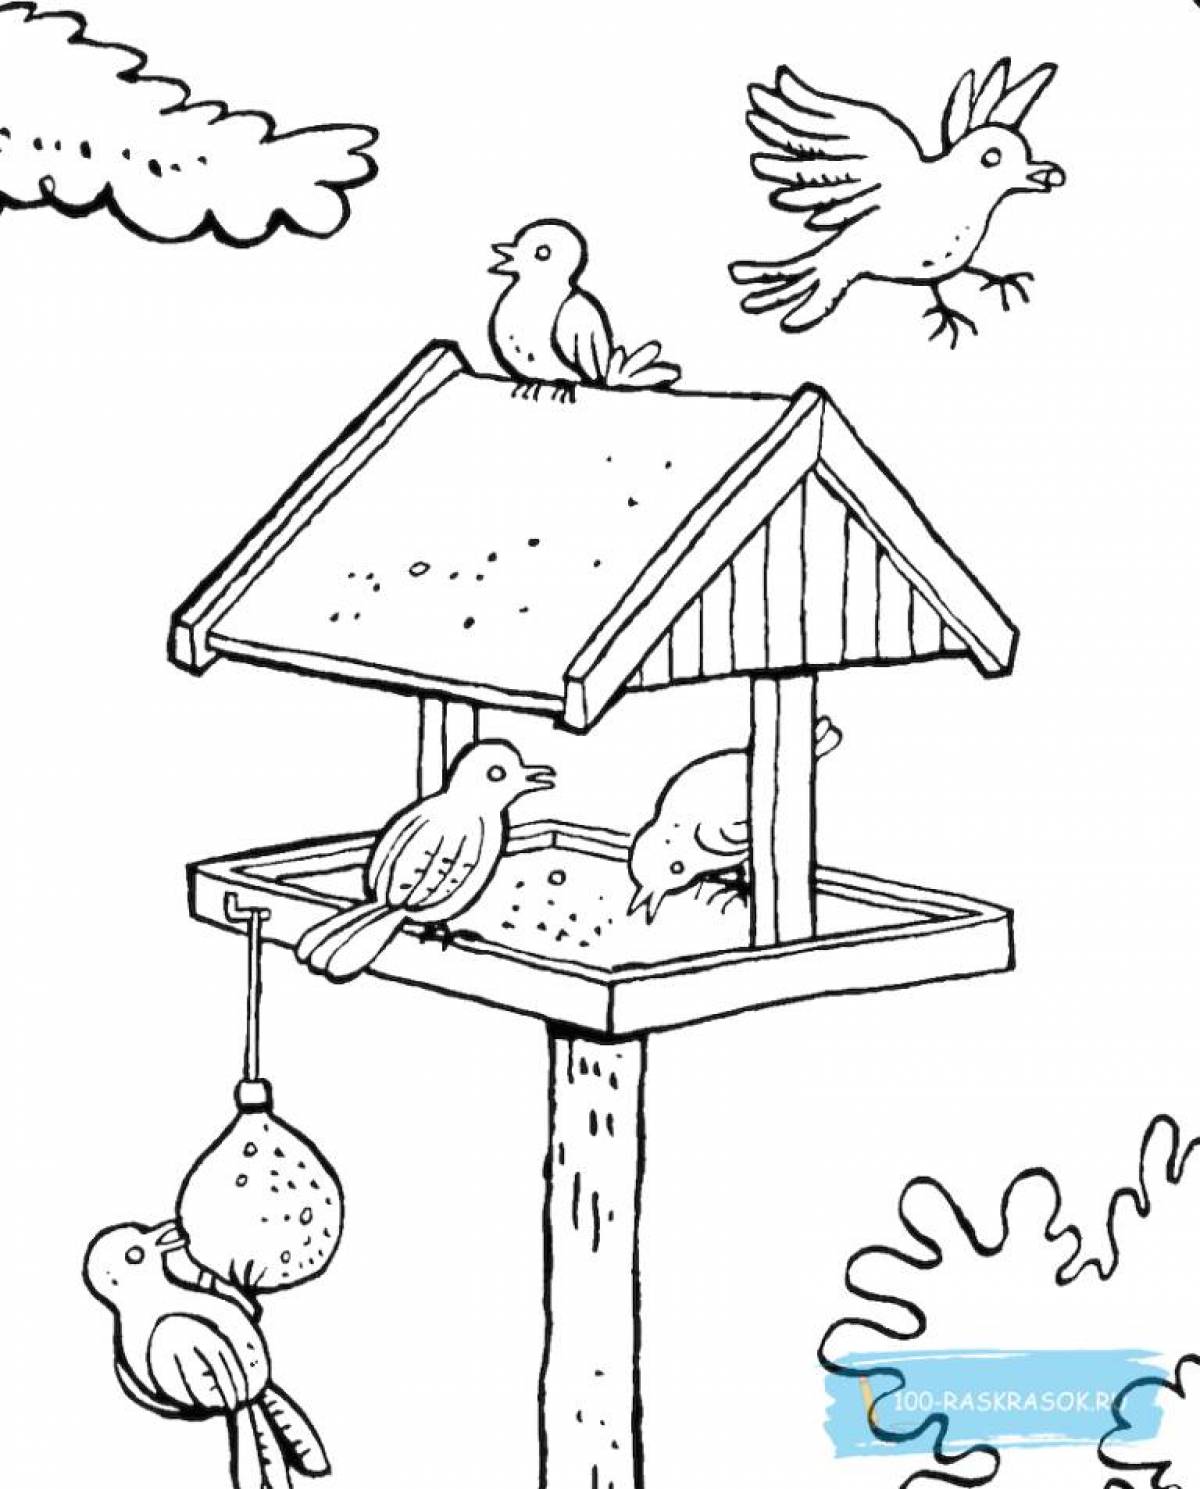 Creative bird feeder coloring book for kids